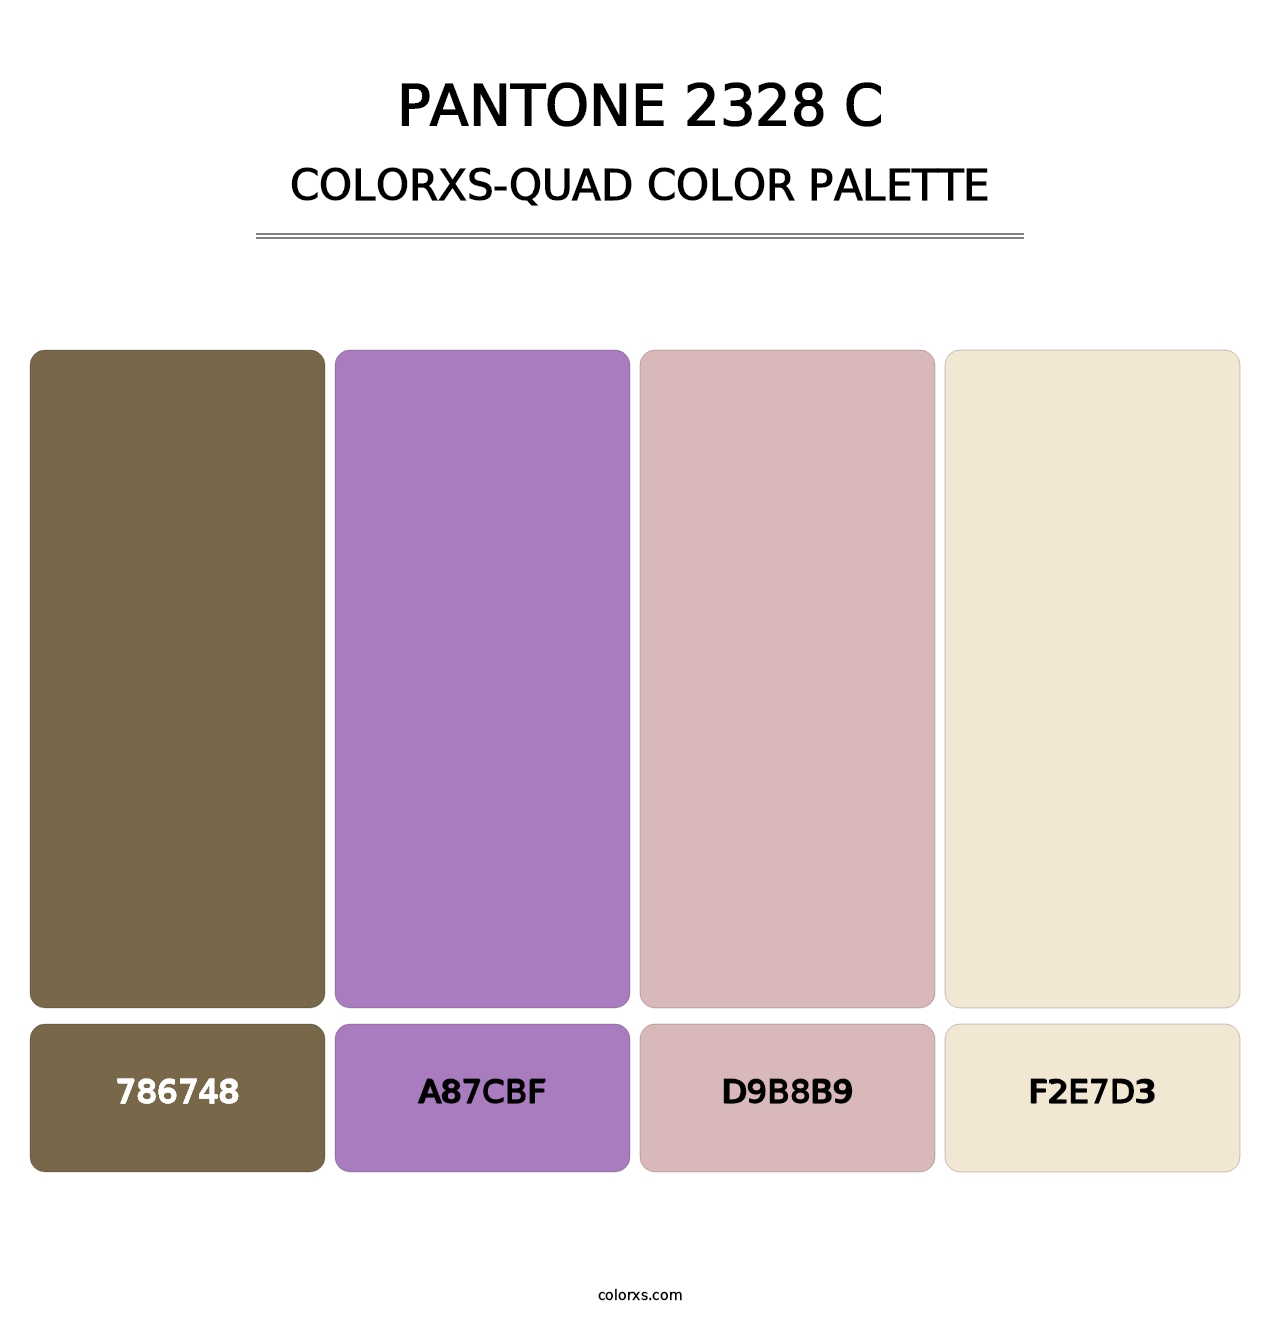 PANTONE 2328 C - Colorxs Quad Palette